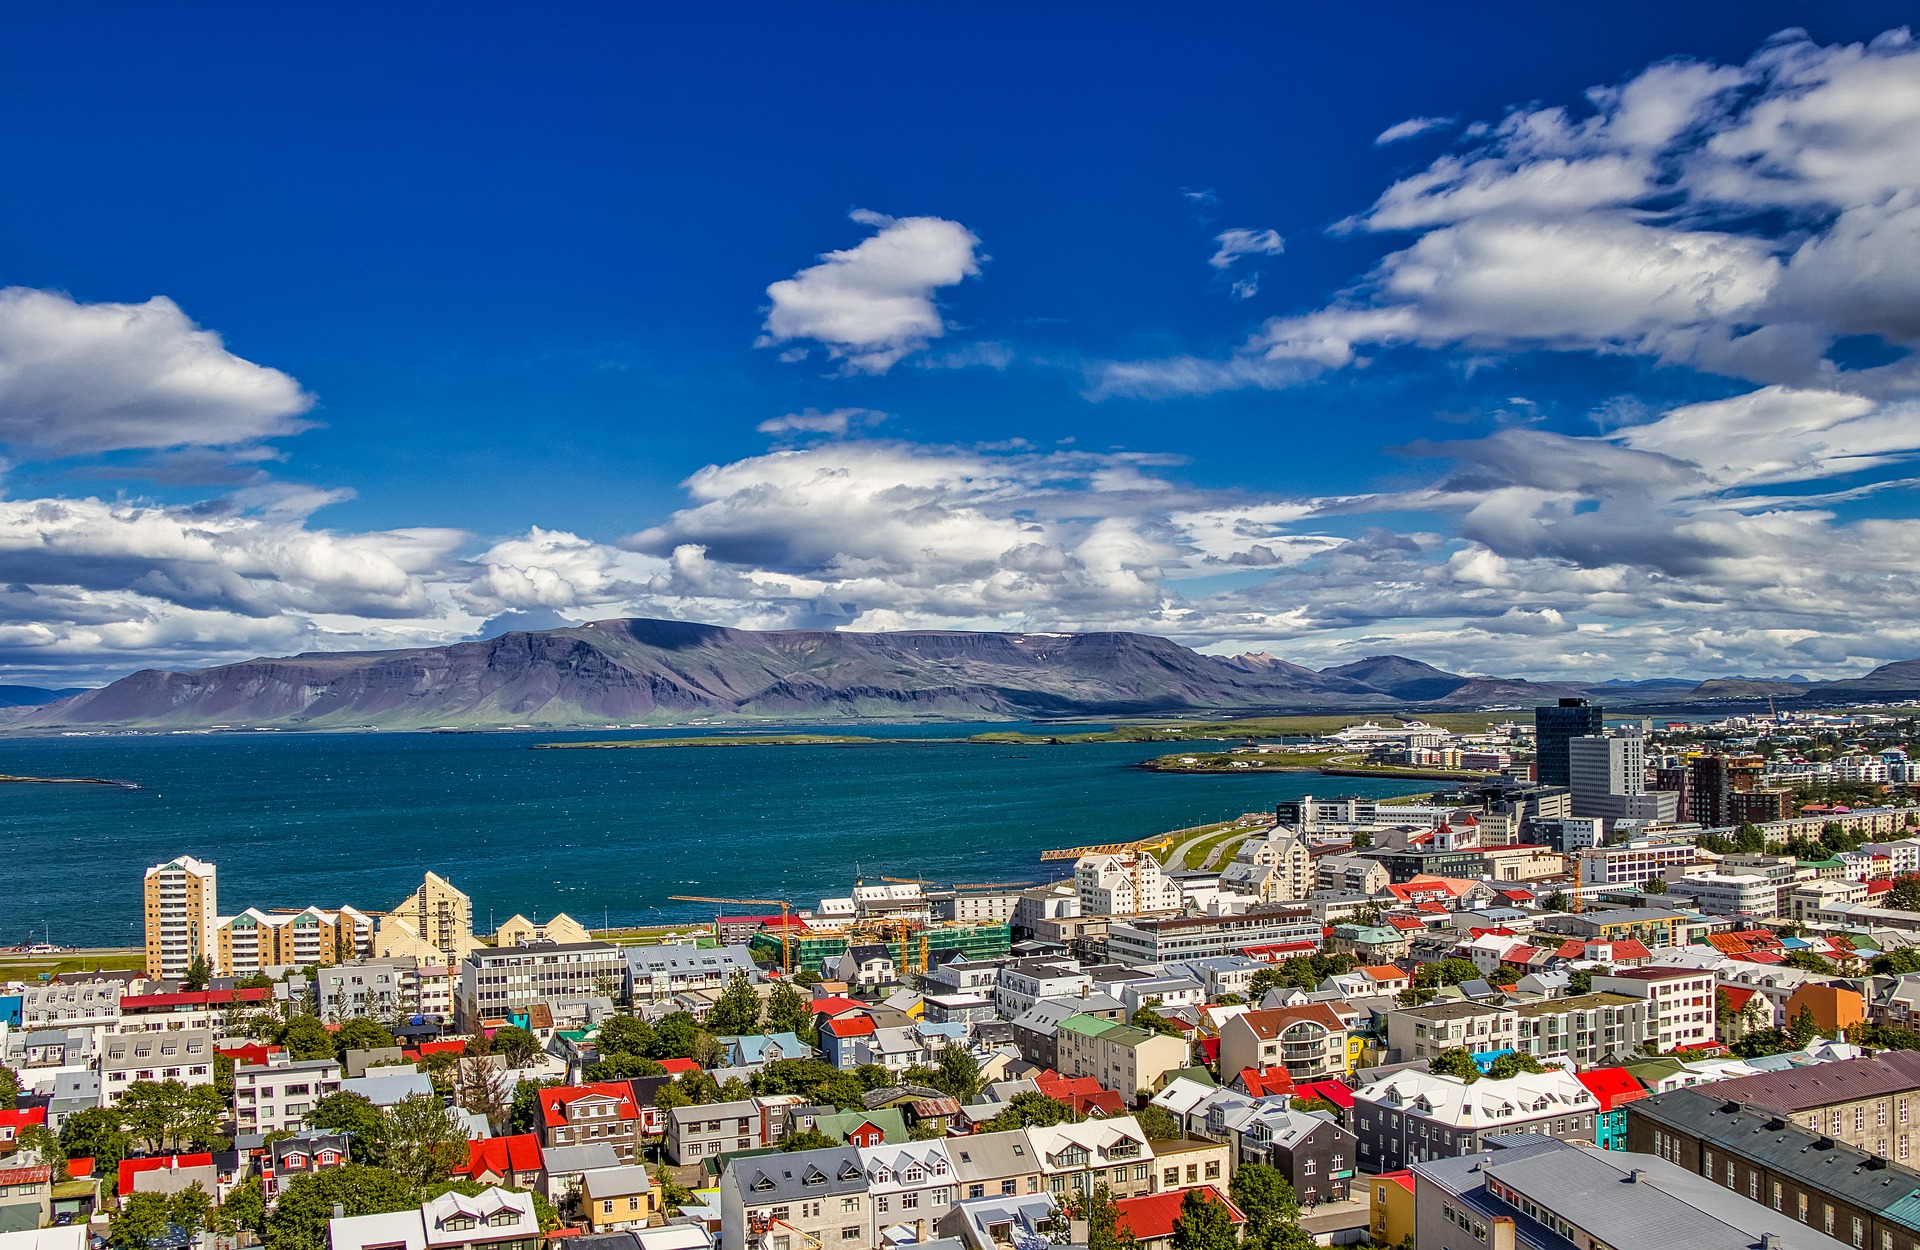 아이슬란드 수도 레이캬비크의 알록달록한 마을 건물들과 푸른 바다